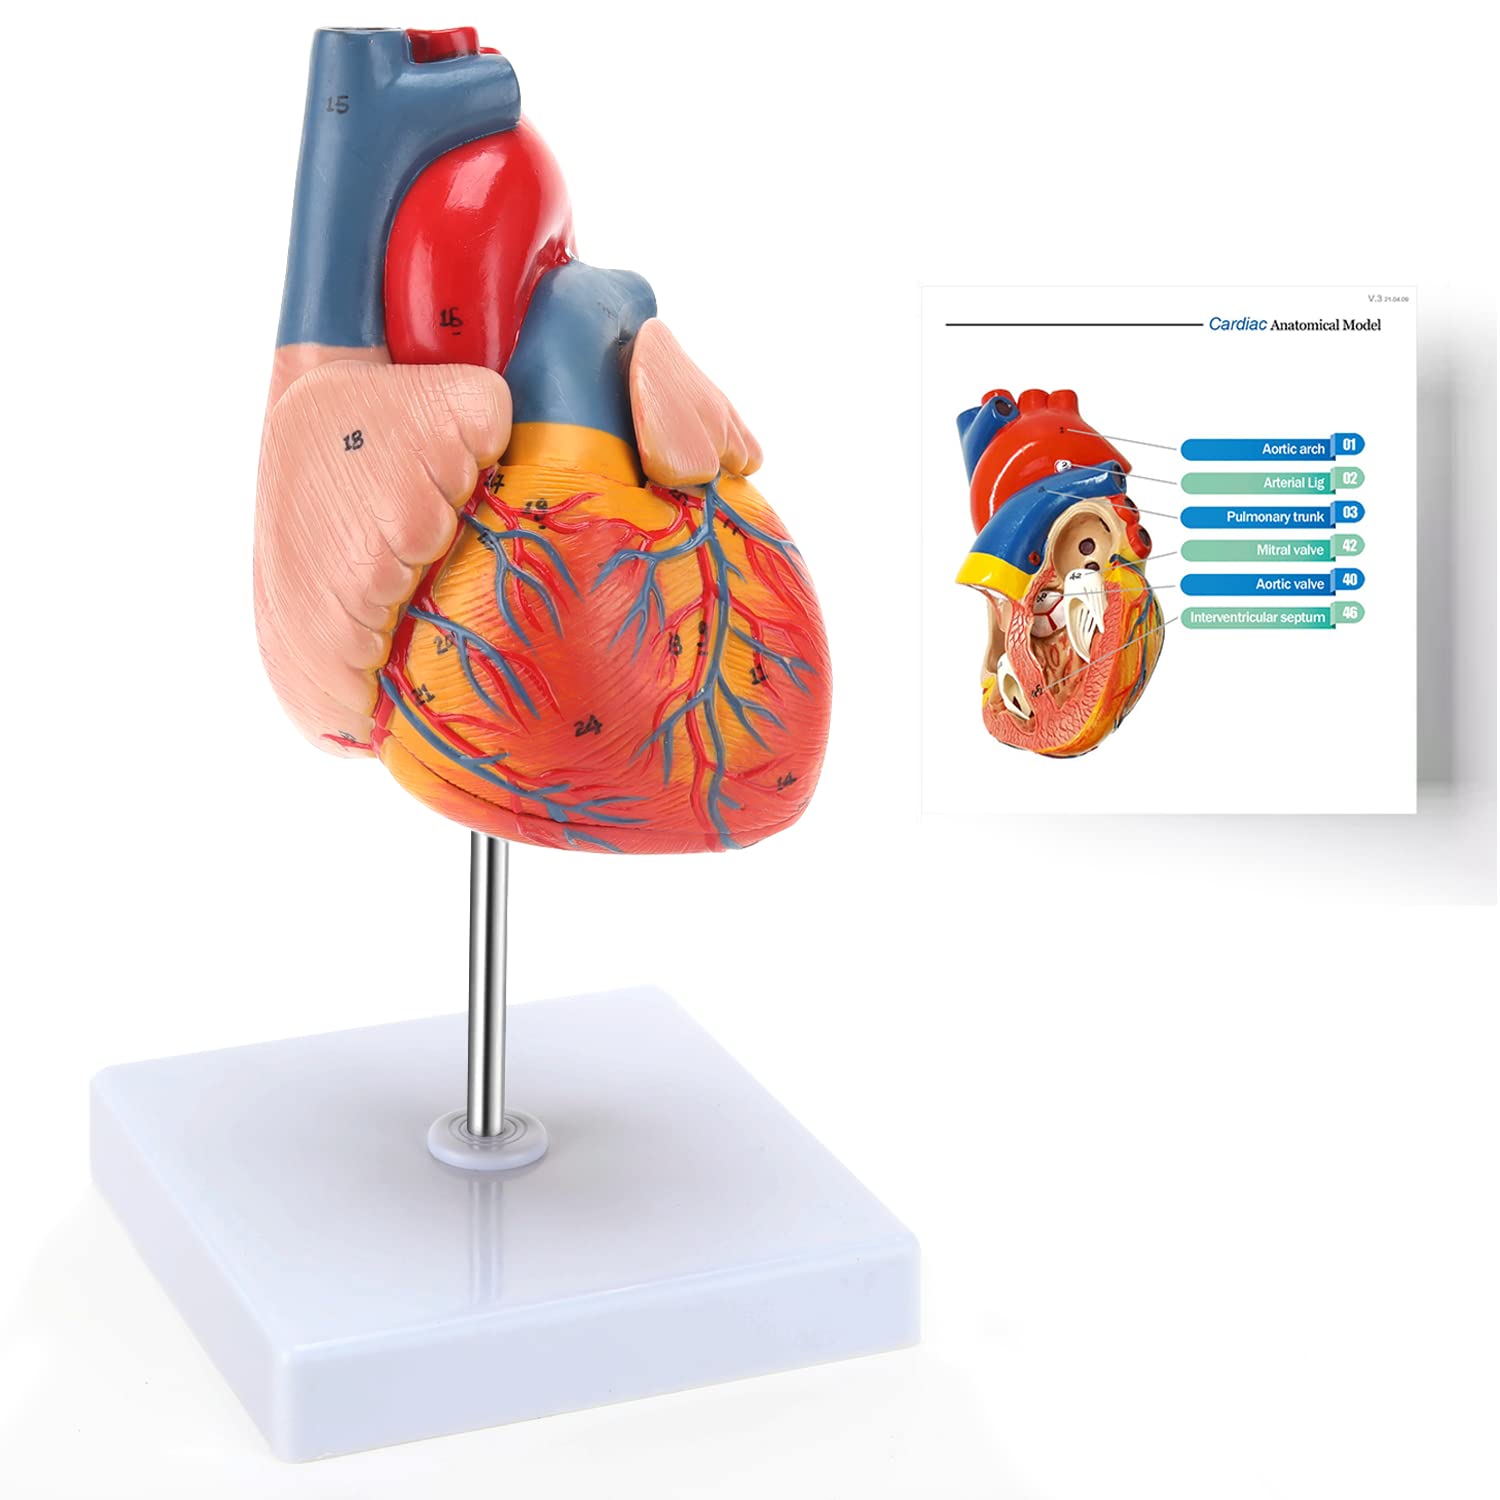 ■商品説明■ ■実物大の人体心臓モデル：心臓解剖モデルはプロの医療技術者から開発し、こんな3D心臓モデルは教育や医療分野の人々にふさわしいです。 ■細部にこだわる手描き：主体の心臓モデルは手描きで、心臓モデルの表面までのテキスチャや特徴がはっきり表示される優れた細部レベルです。 ■磁気吸着：実物大の解剖心臓モデルは一人での研究に適します。心臓モデルは2点分解可能の仕組みを採用し、隠れる磁石を通じてモデル主体をしっかり固定したので、心臓の前面壁を分解しやすいです。 ■スタンドに取り付け：解剖心臓モデルはスタンドから取り外す可能なので、手に取ってさらに詳しく細部を観察します。また心臓の前面壁を分解して心室の弁、血管などの心室構造を研究することに役に立ちます。 ◇ ご注意 ※日本語説明書は付属致しません。 ※仕様は予告なく変更する場合がございます。 ※ 全商品、「離島.一部地域」は別途 送料が掛かります。 ※検品を行っておりますが輸入品のため、多少の傷や汚れ等はご了承下さい。